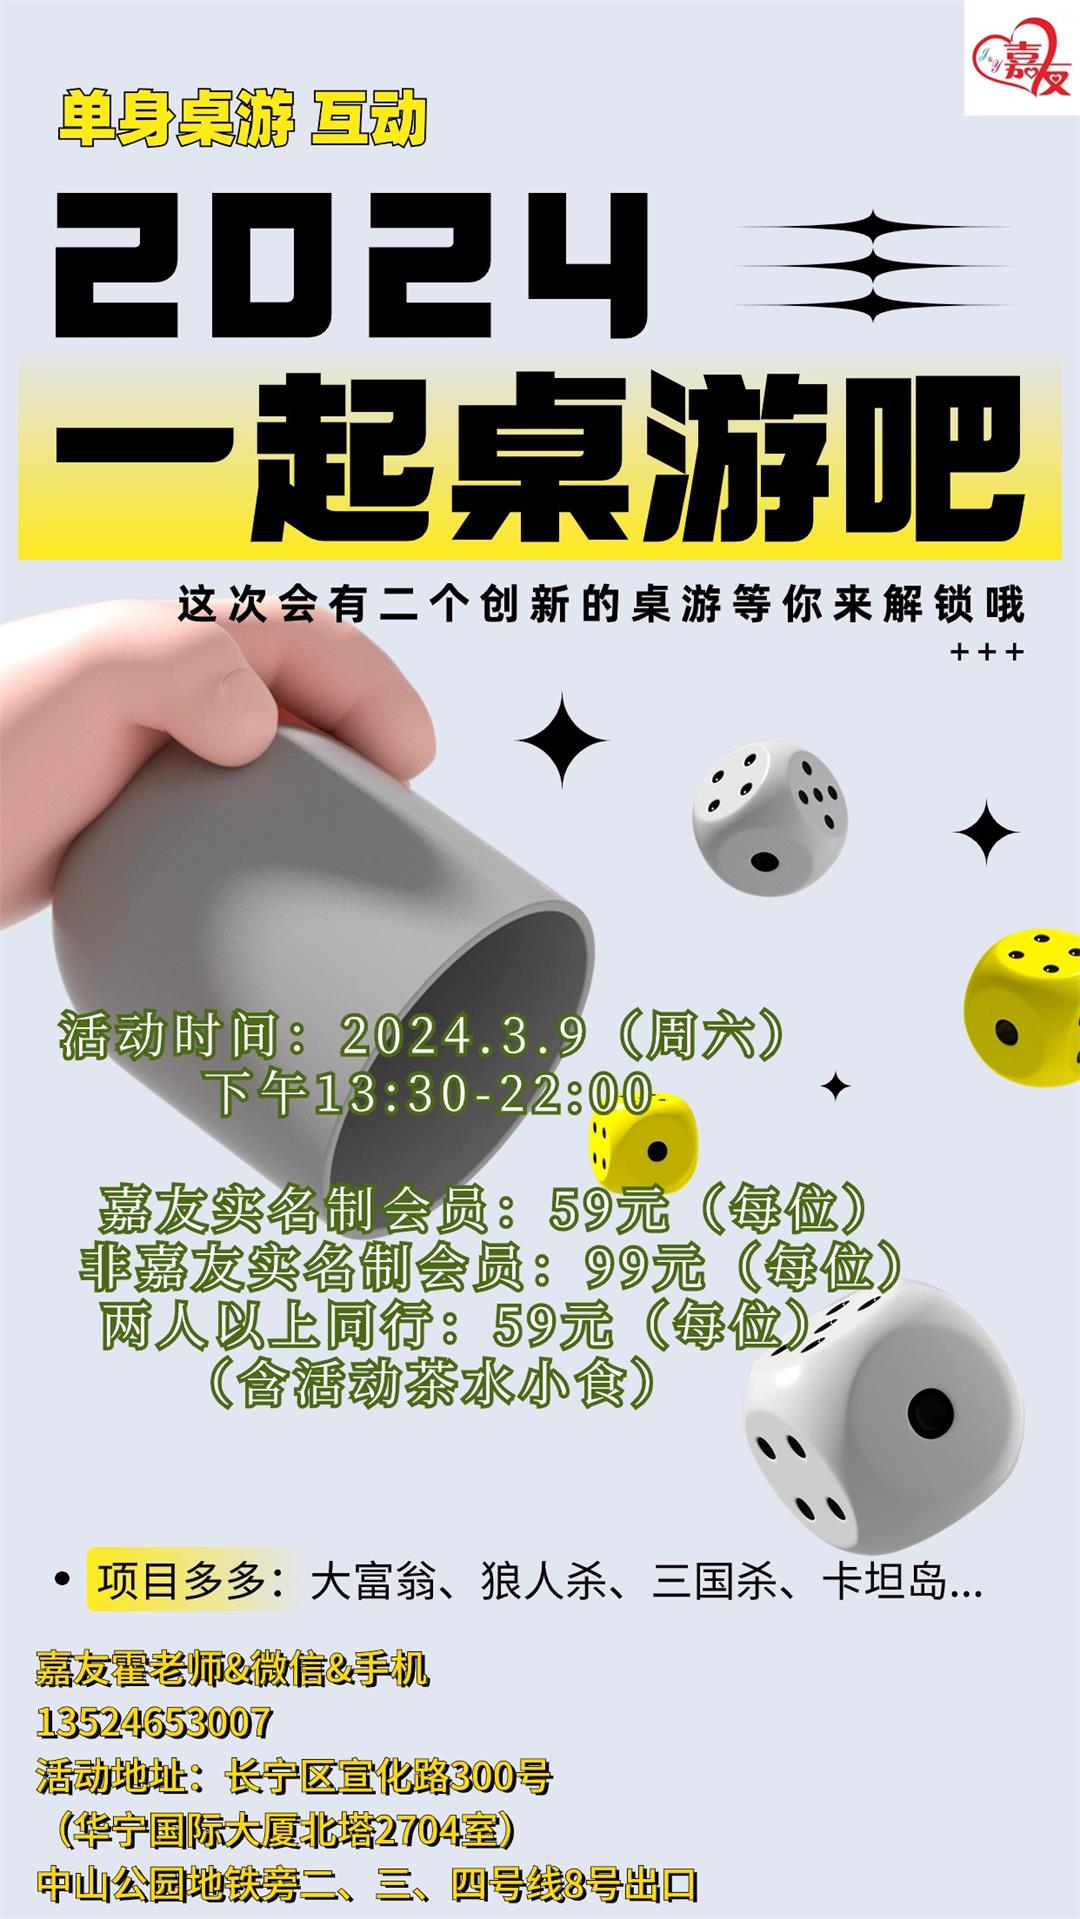 时尚3D风桌游娱乐活动宣传海报 (1).jpg